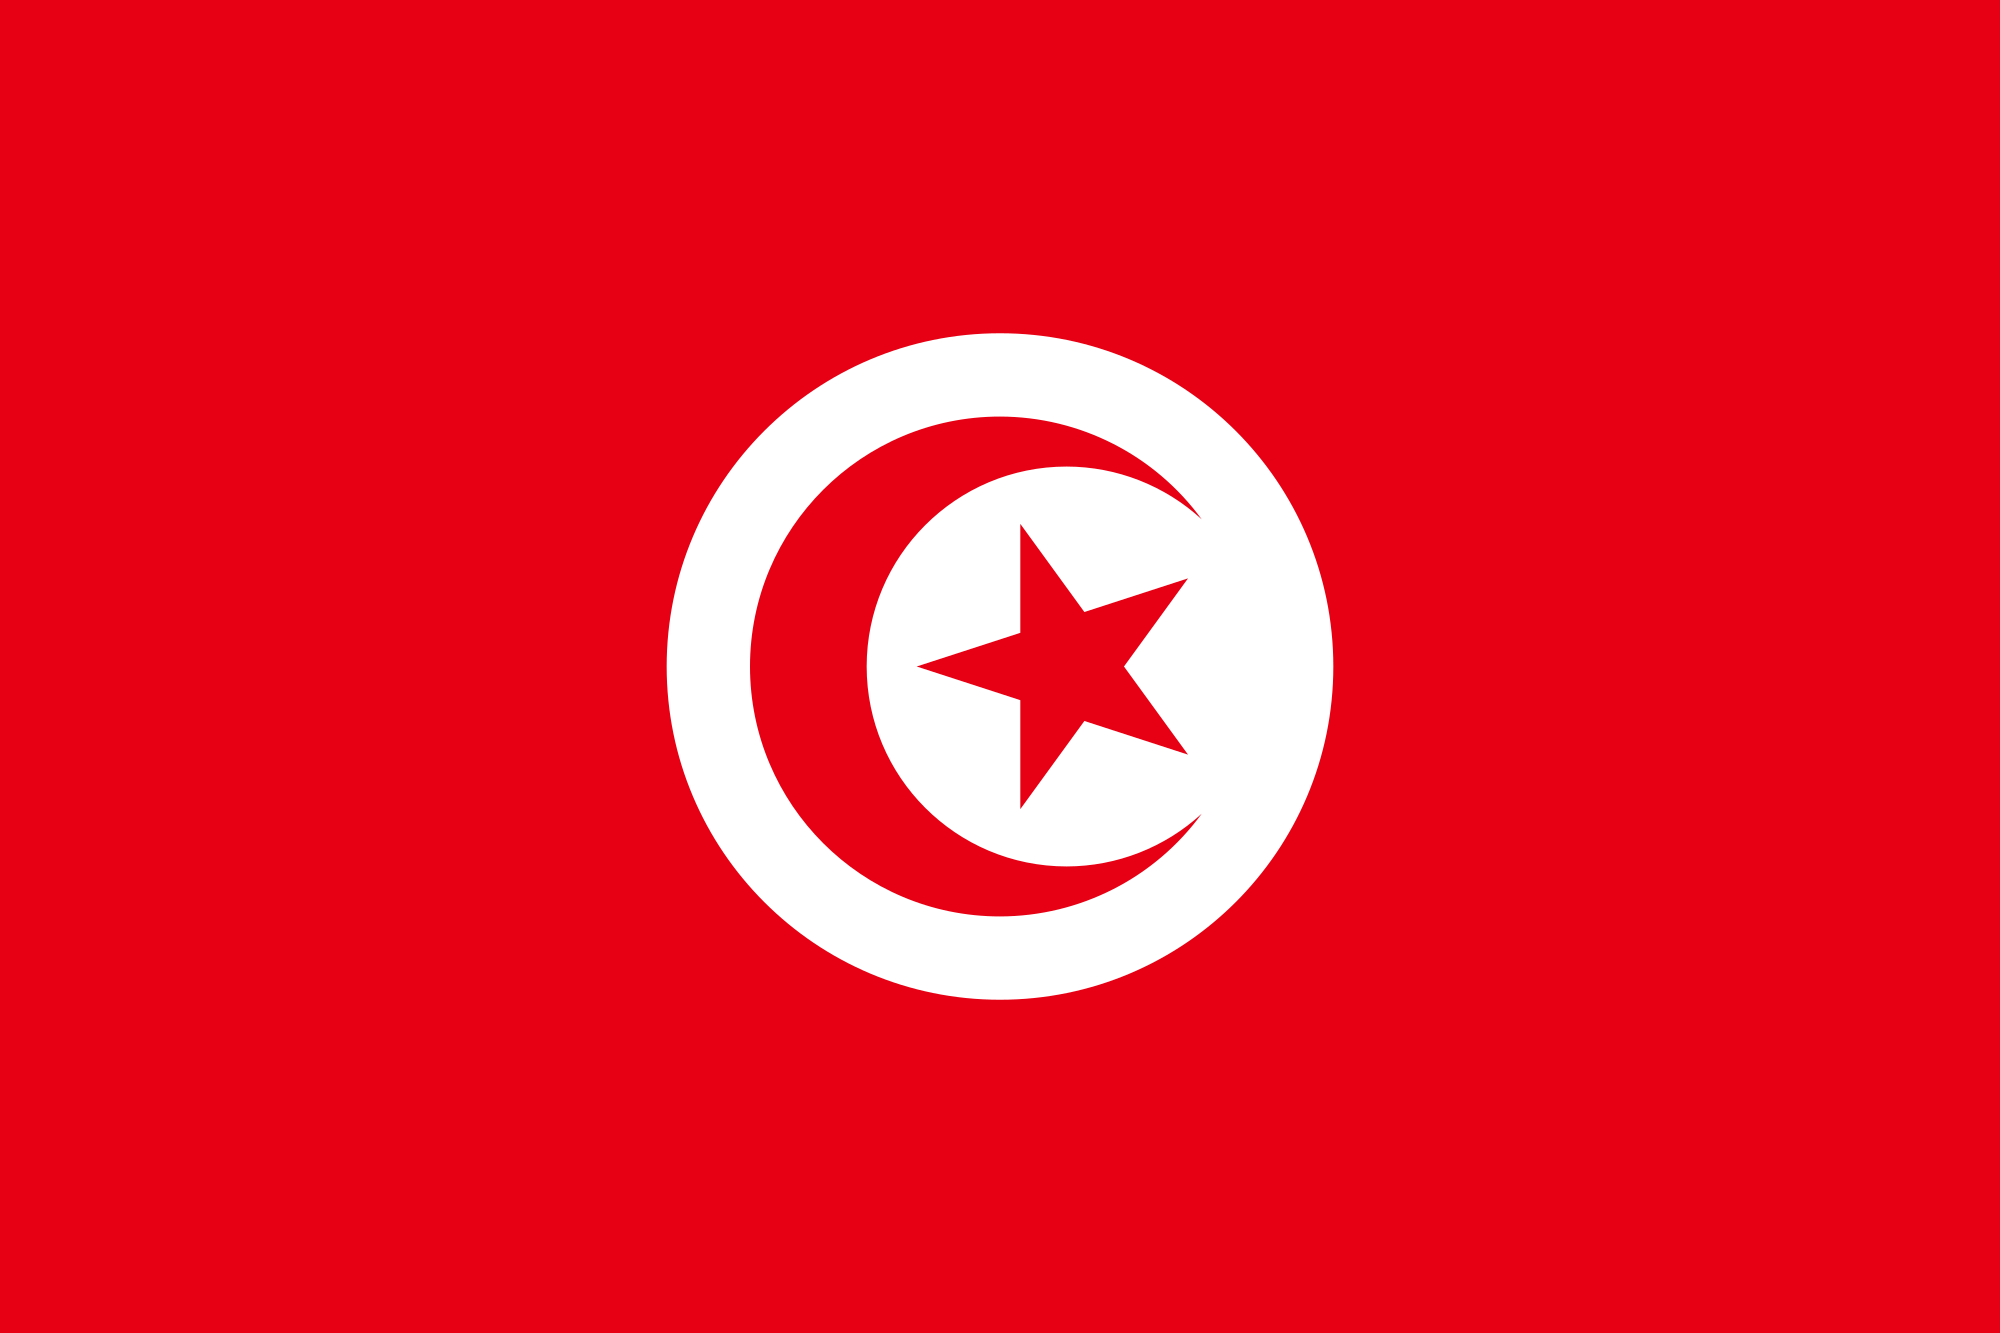 مساحة تونس وعدد سكانها